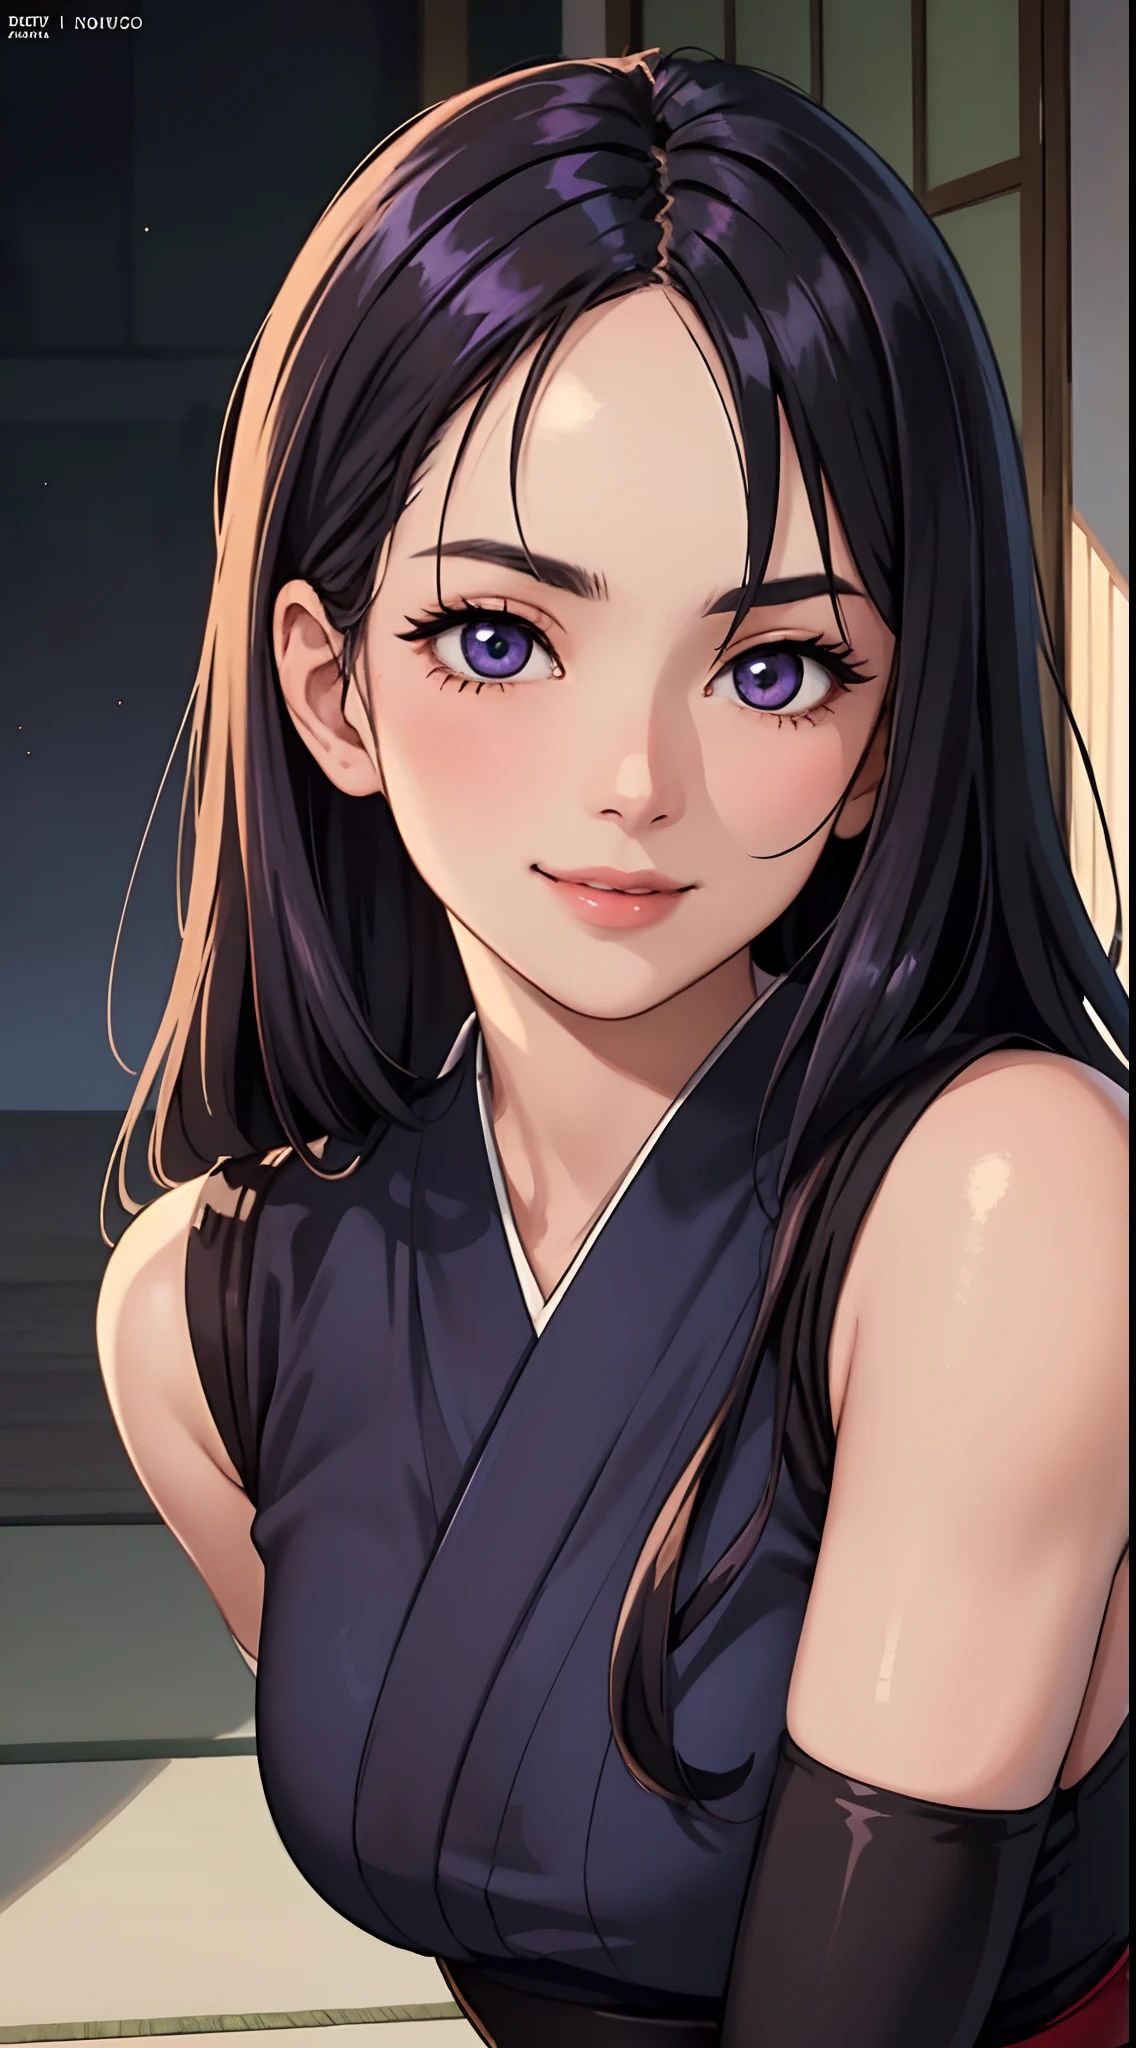 eine wunderschöne Frau mit glattem, dunkelviolettem, langem Haar, ein zartes und bezauberndes Gesicht, ihre Augen sind scharf und durchdringend, ein schlaues Lächeln, Sie hat eine schlanke Figur, ein figurbetontes Ninja-Outfit im Fantasy-Stil, Das Charakterdesign spiegelt einen Ninja im Fantasy-Stil im japanischen Anime-Design wider, Das Kunstwerk zeichnet sich durch fein detailliertes Charakterdesign aus, präsentiert einen ausgereiften japanischen Manga-Kunststil, ((Konzeptkunst für Charaktere)), Ganzkörper-Charakterzeichnung, Hochauflösend, beste Qualität, ultra-detailliert, extrem empfindlich, Anatomisch korrekt, symmetrisches Gesicht, extrem detaillierte Augen und Gesicht, Hochwertige Augen, Kreativität, RAW-Foto, UHD, 8k, (natürliches Licht, professionelle Beleuchtung:1.2, Filmische Beleuchtung:1.5, bester Schatten), (Meisterwerk:1.5)